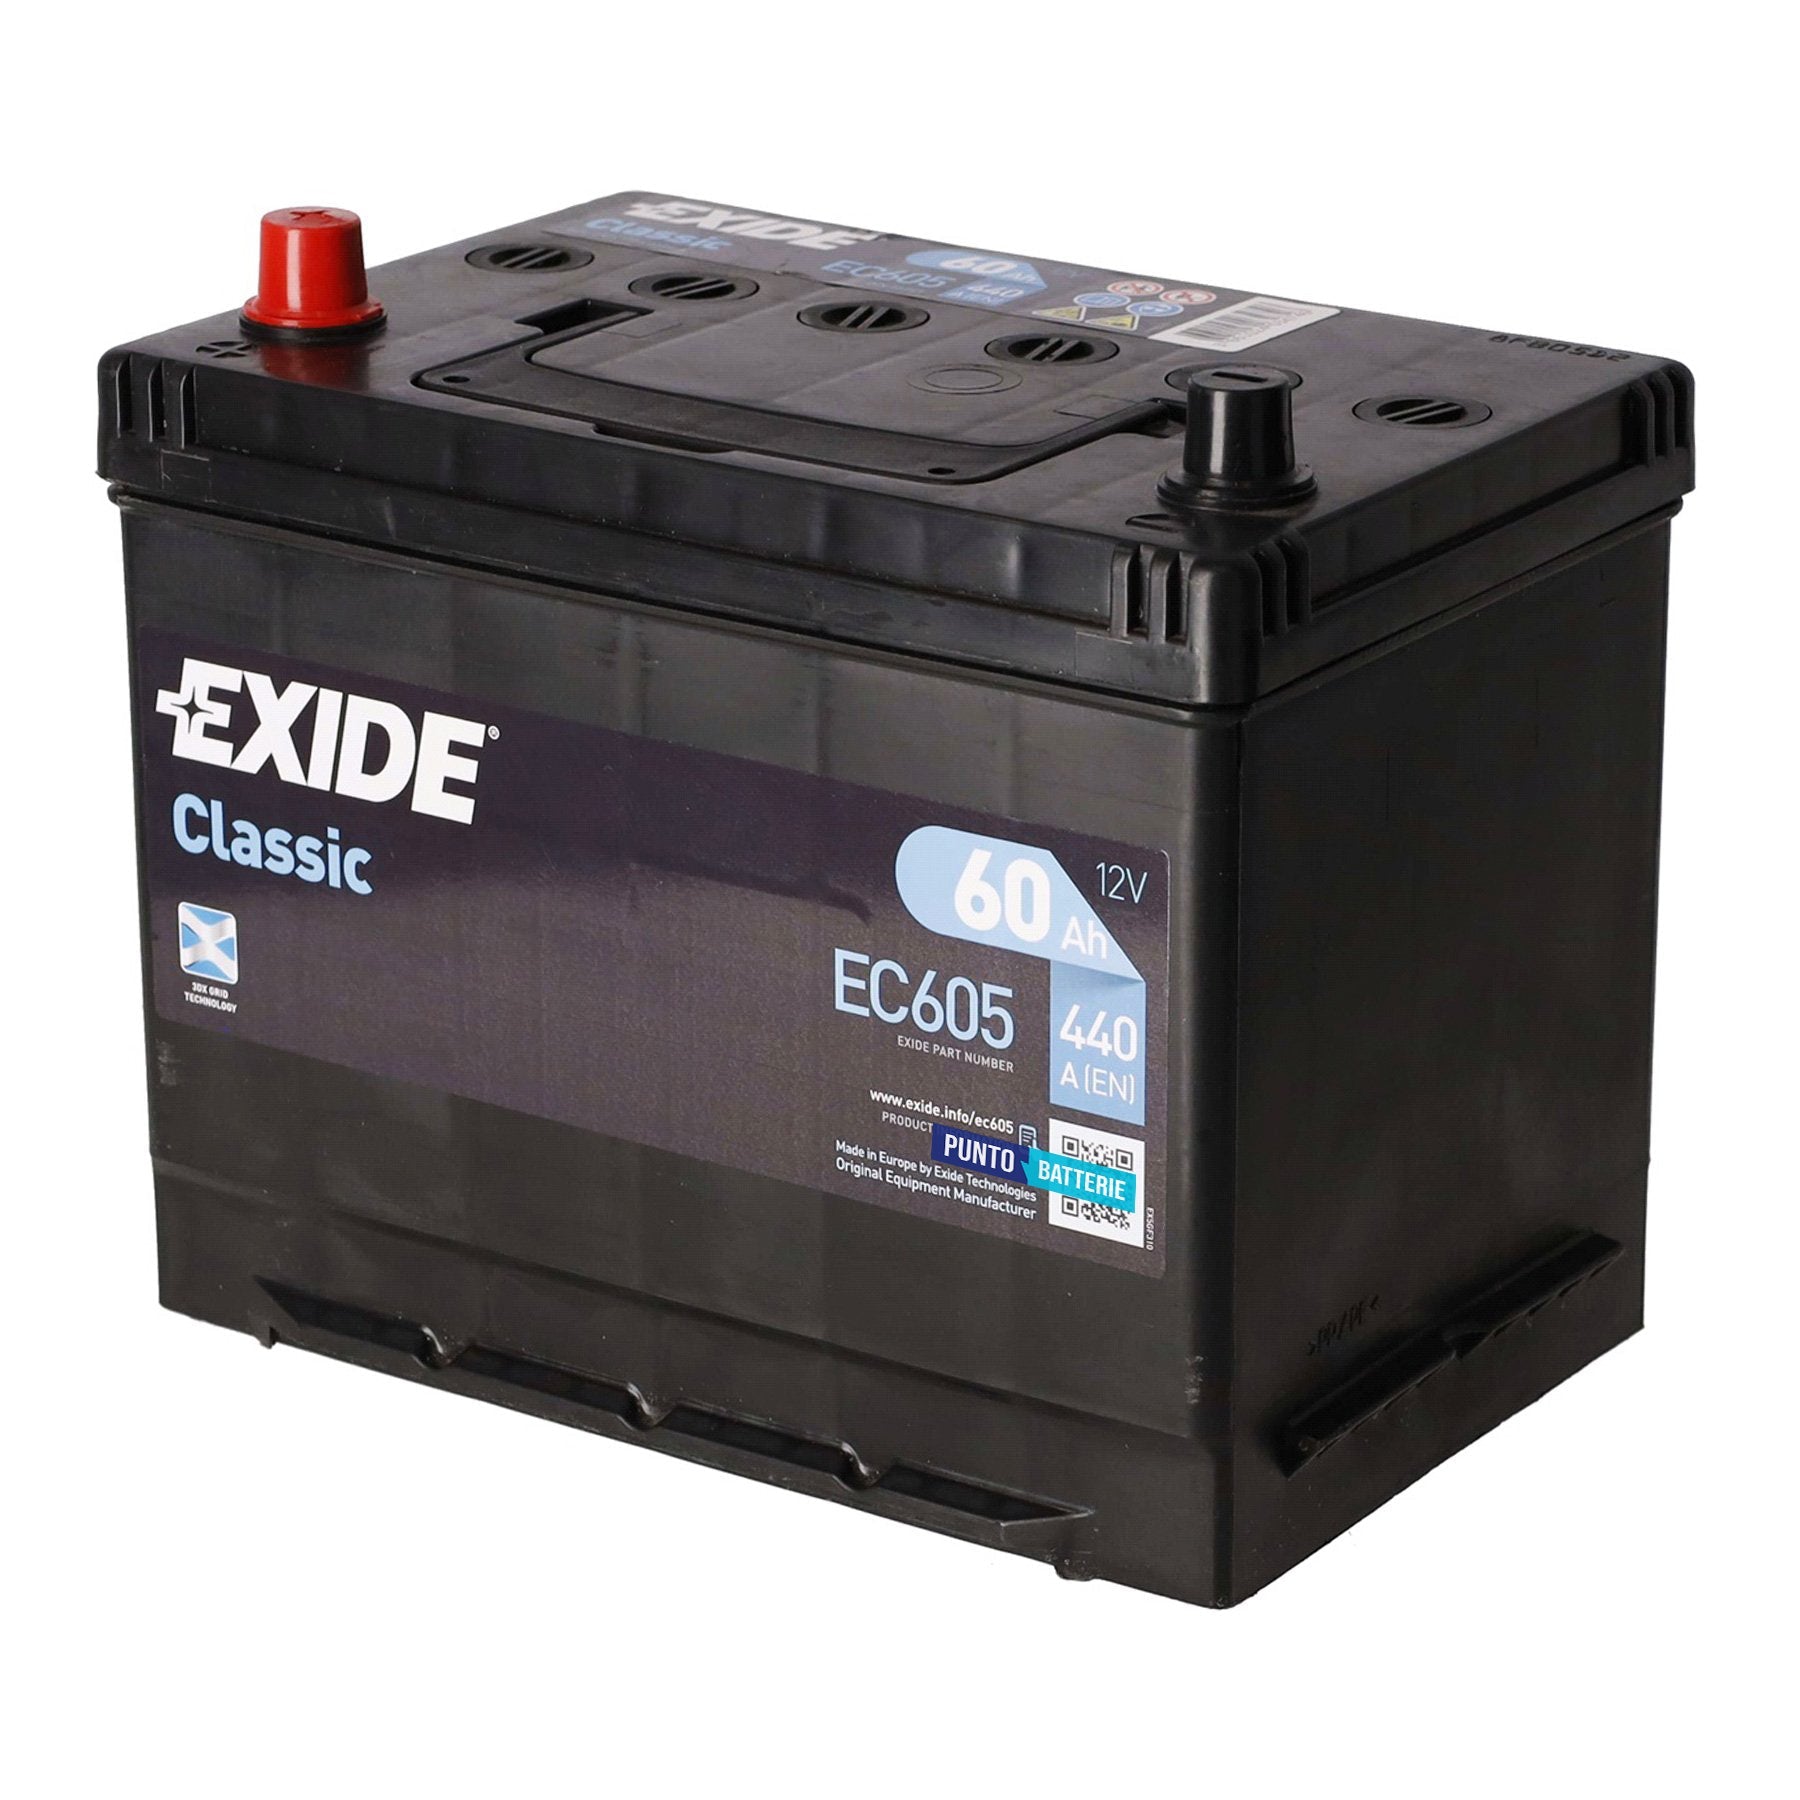 Batteria originale Exide Classic EC605, dimensioni 270 x 173 x 222, polo positivo a sinistra, 12 volt, 60 amperora, 440 ampere. Batteria per auto e veicoli leggeri.